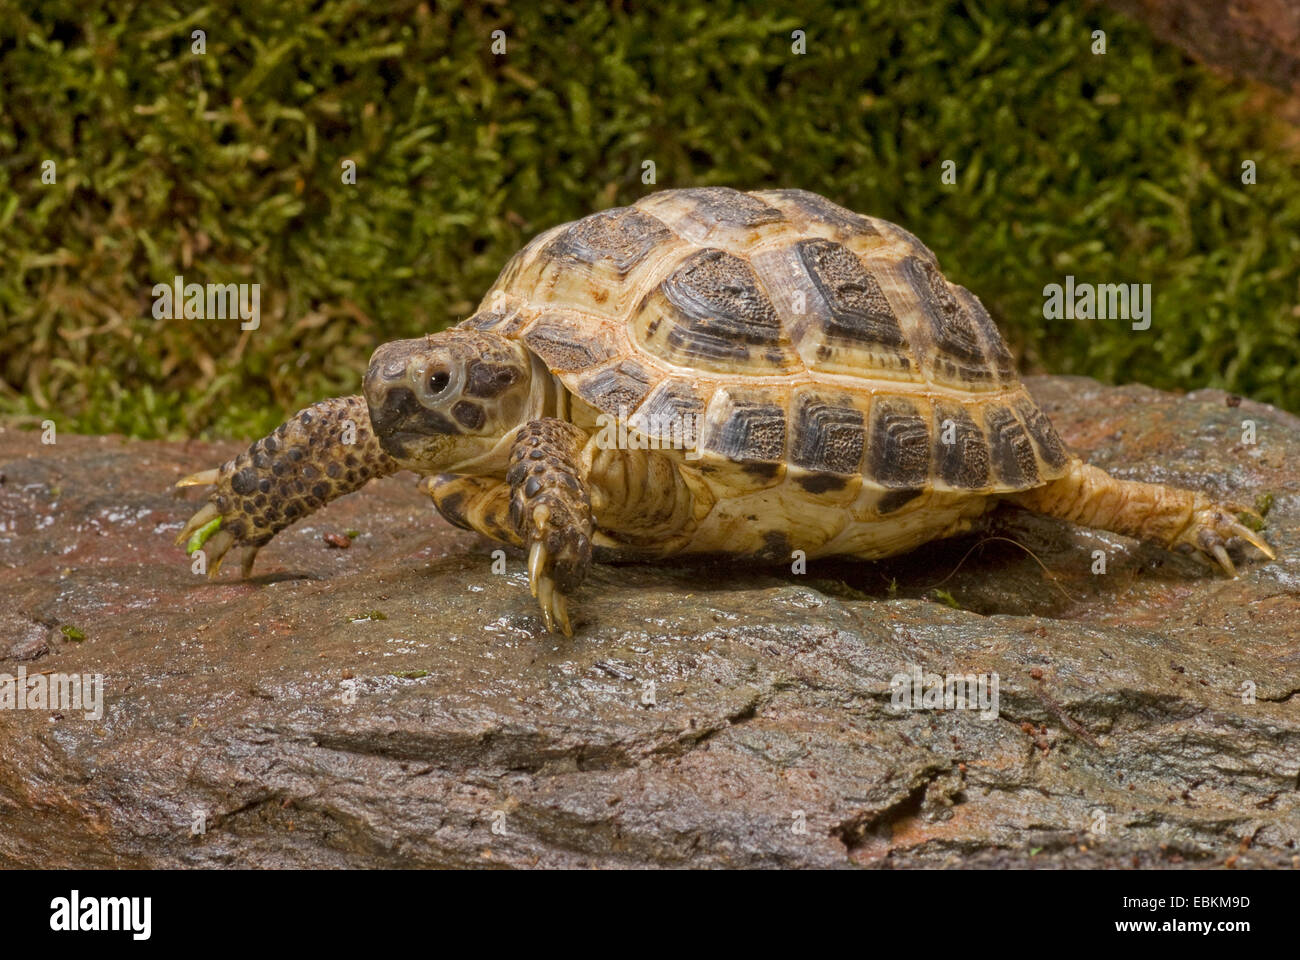 La tortuga de Horsfield, cuatro dedos cada tortuga, Asia Central (tortuga Agrionemys horsfieldi, Testudo horsfieldii), caminar sobre una piedra mojada Foto de stock